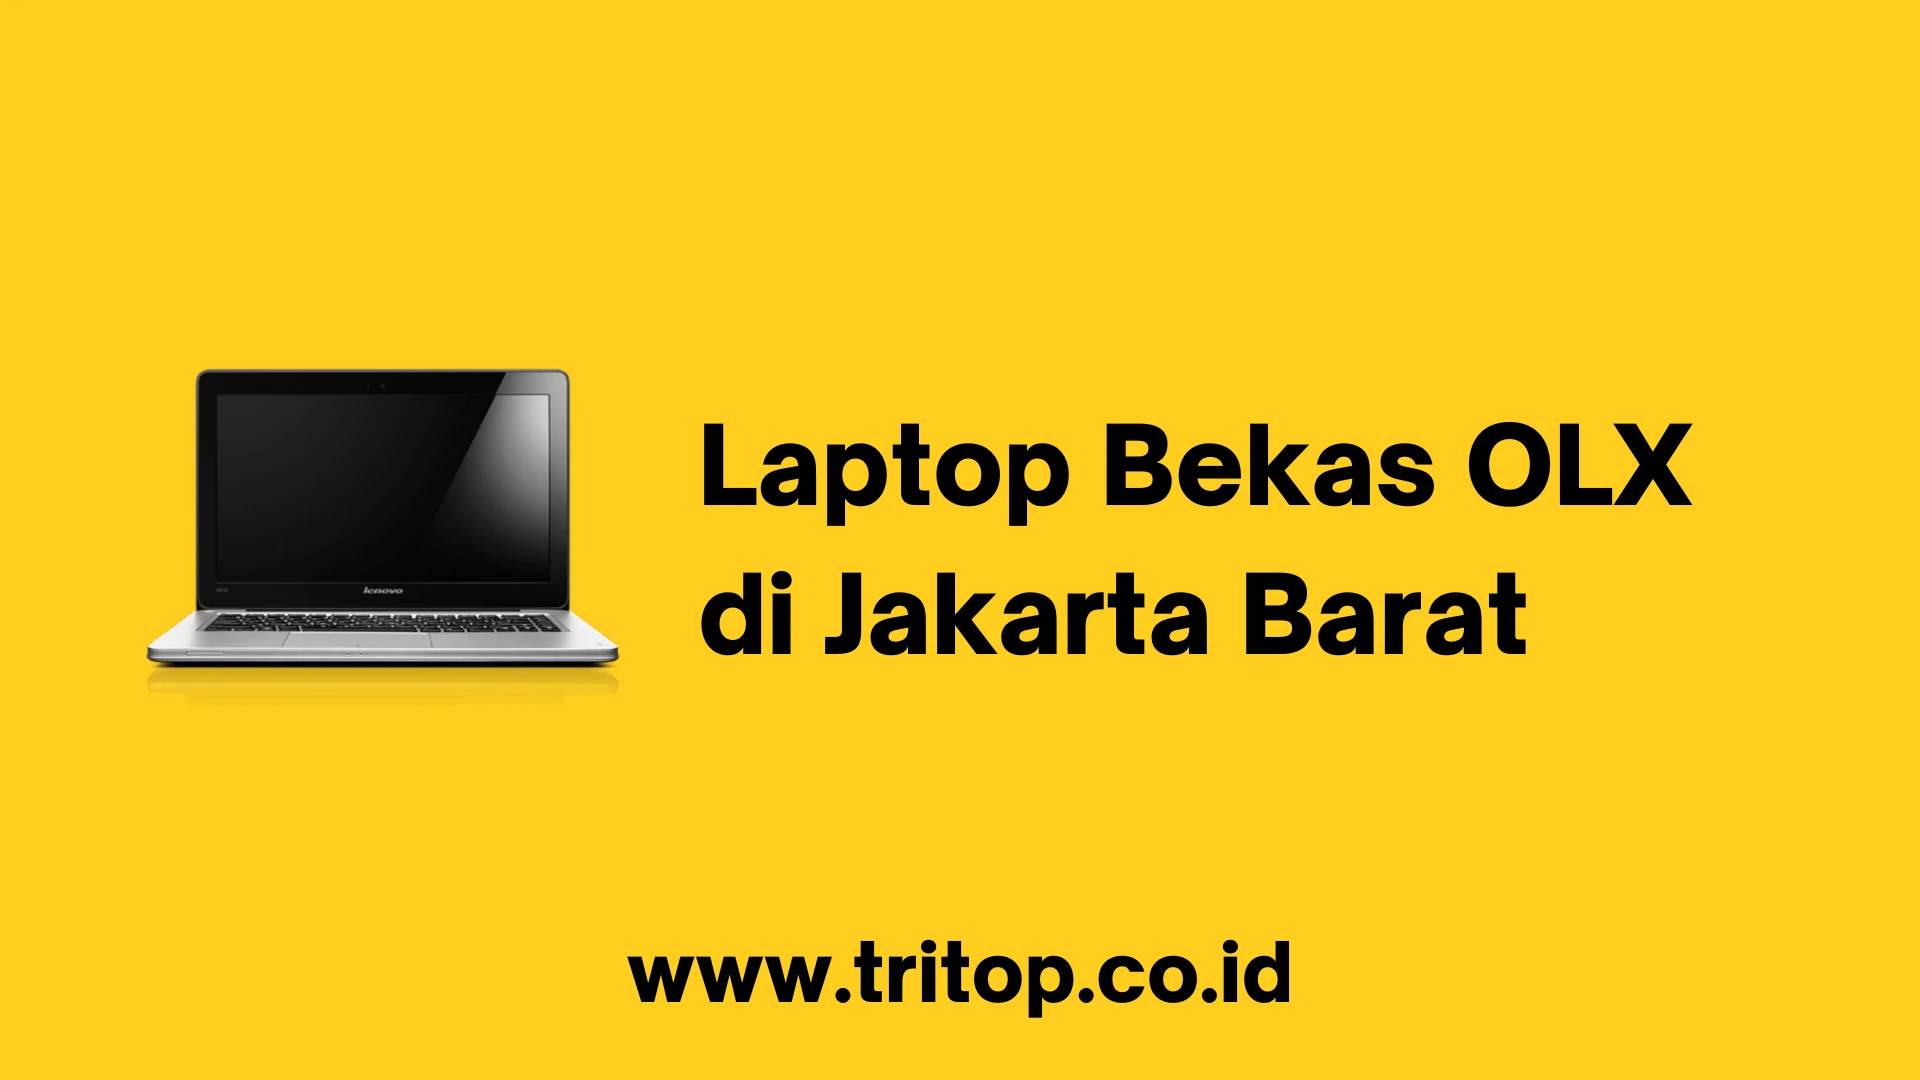 OLX Laptop Bekas Jakarta Barat